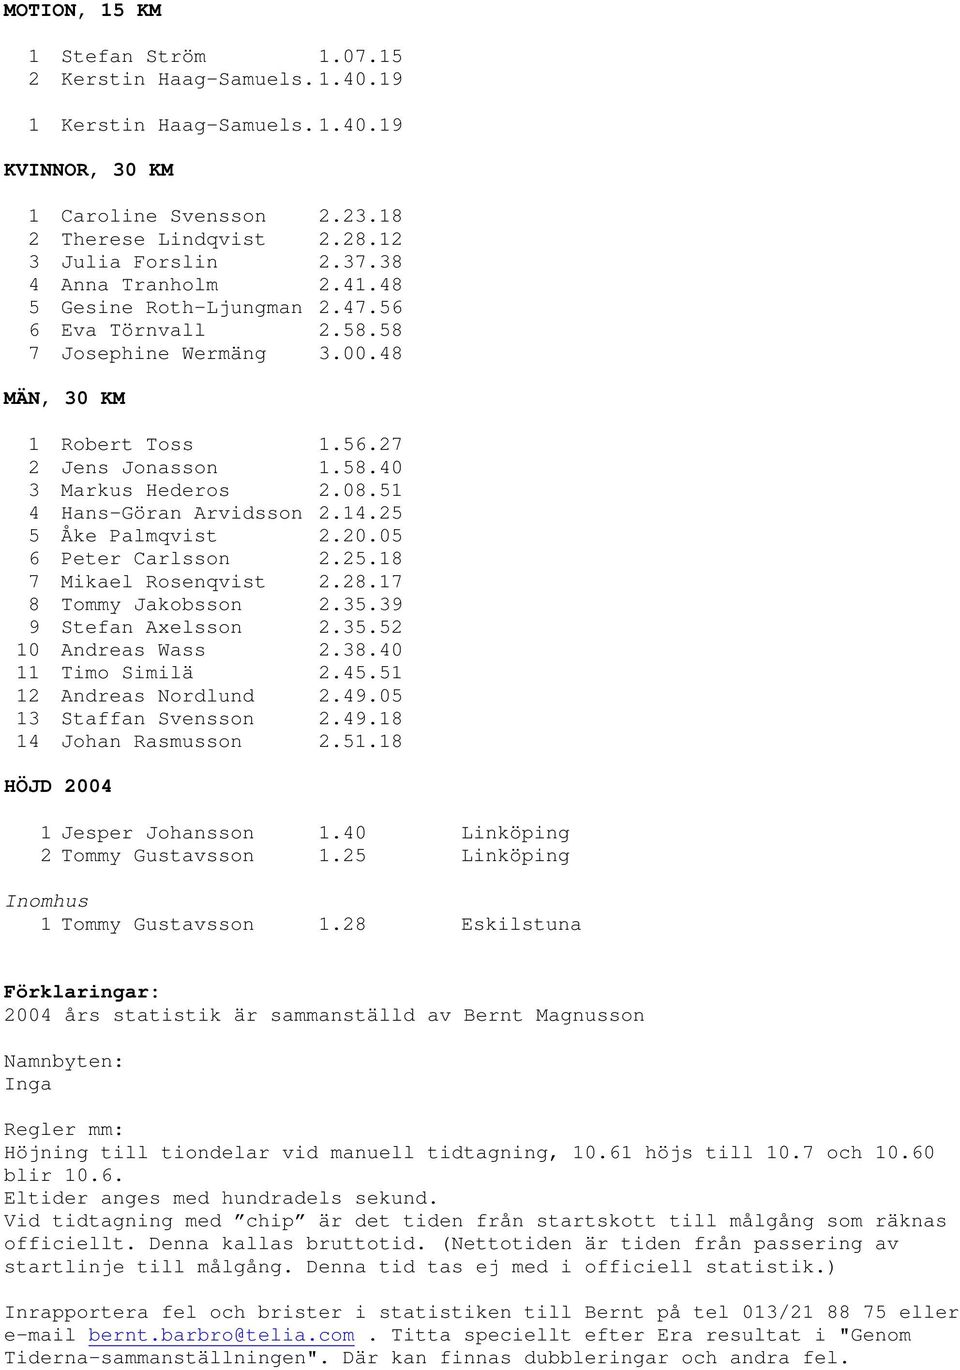 51 4 Hans-Göran Arvidsson 2.14.25 5 Åke Palmqvist 2.20.05 6 Peter Carlsson 2.25.18 7 Mikael Rosenqvist 2.28.17 8 Tommy Jakobsson 2.35.39 9 Stefan Axelsson 2.35.52 10 Andreas Wass 2.38.